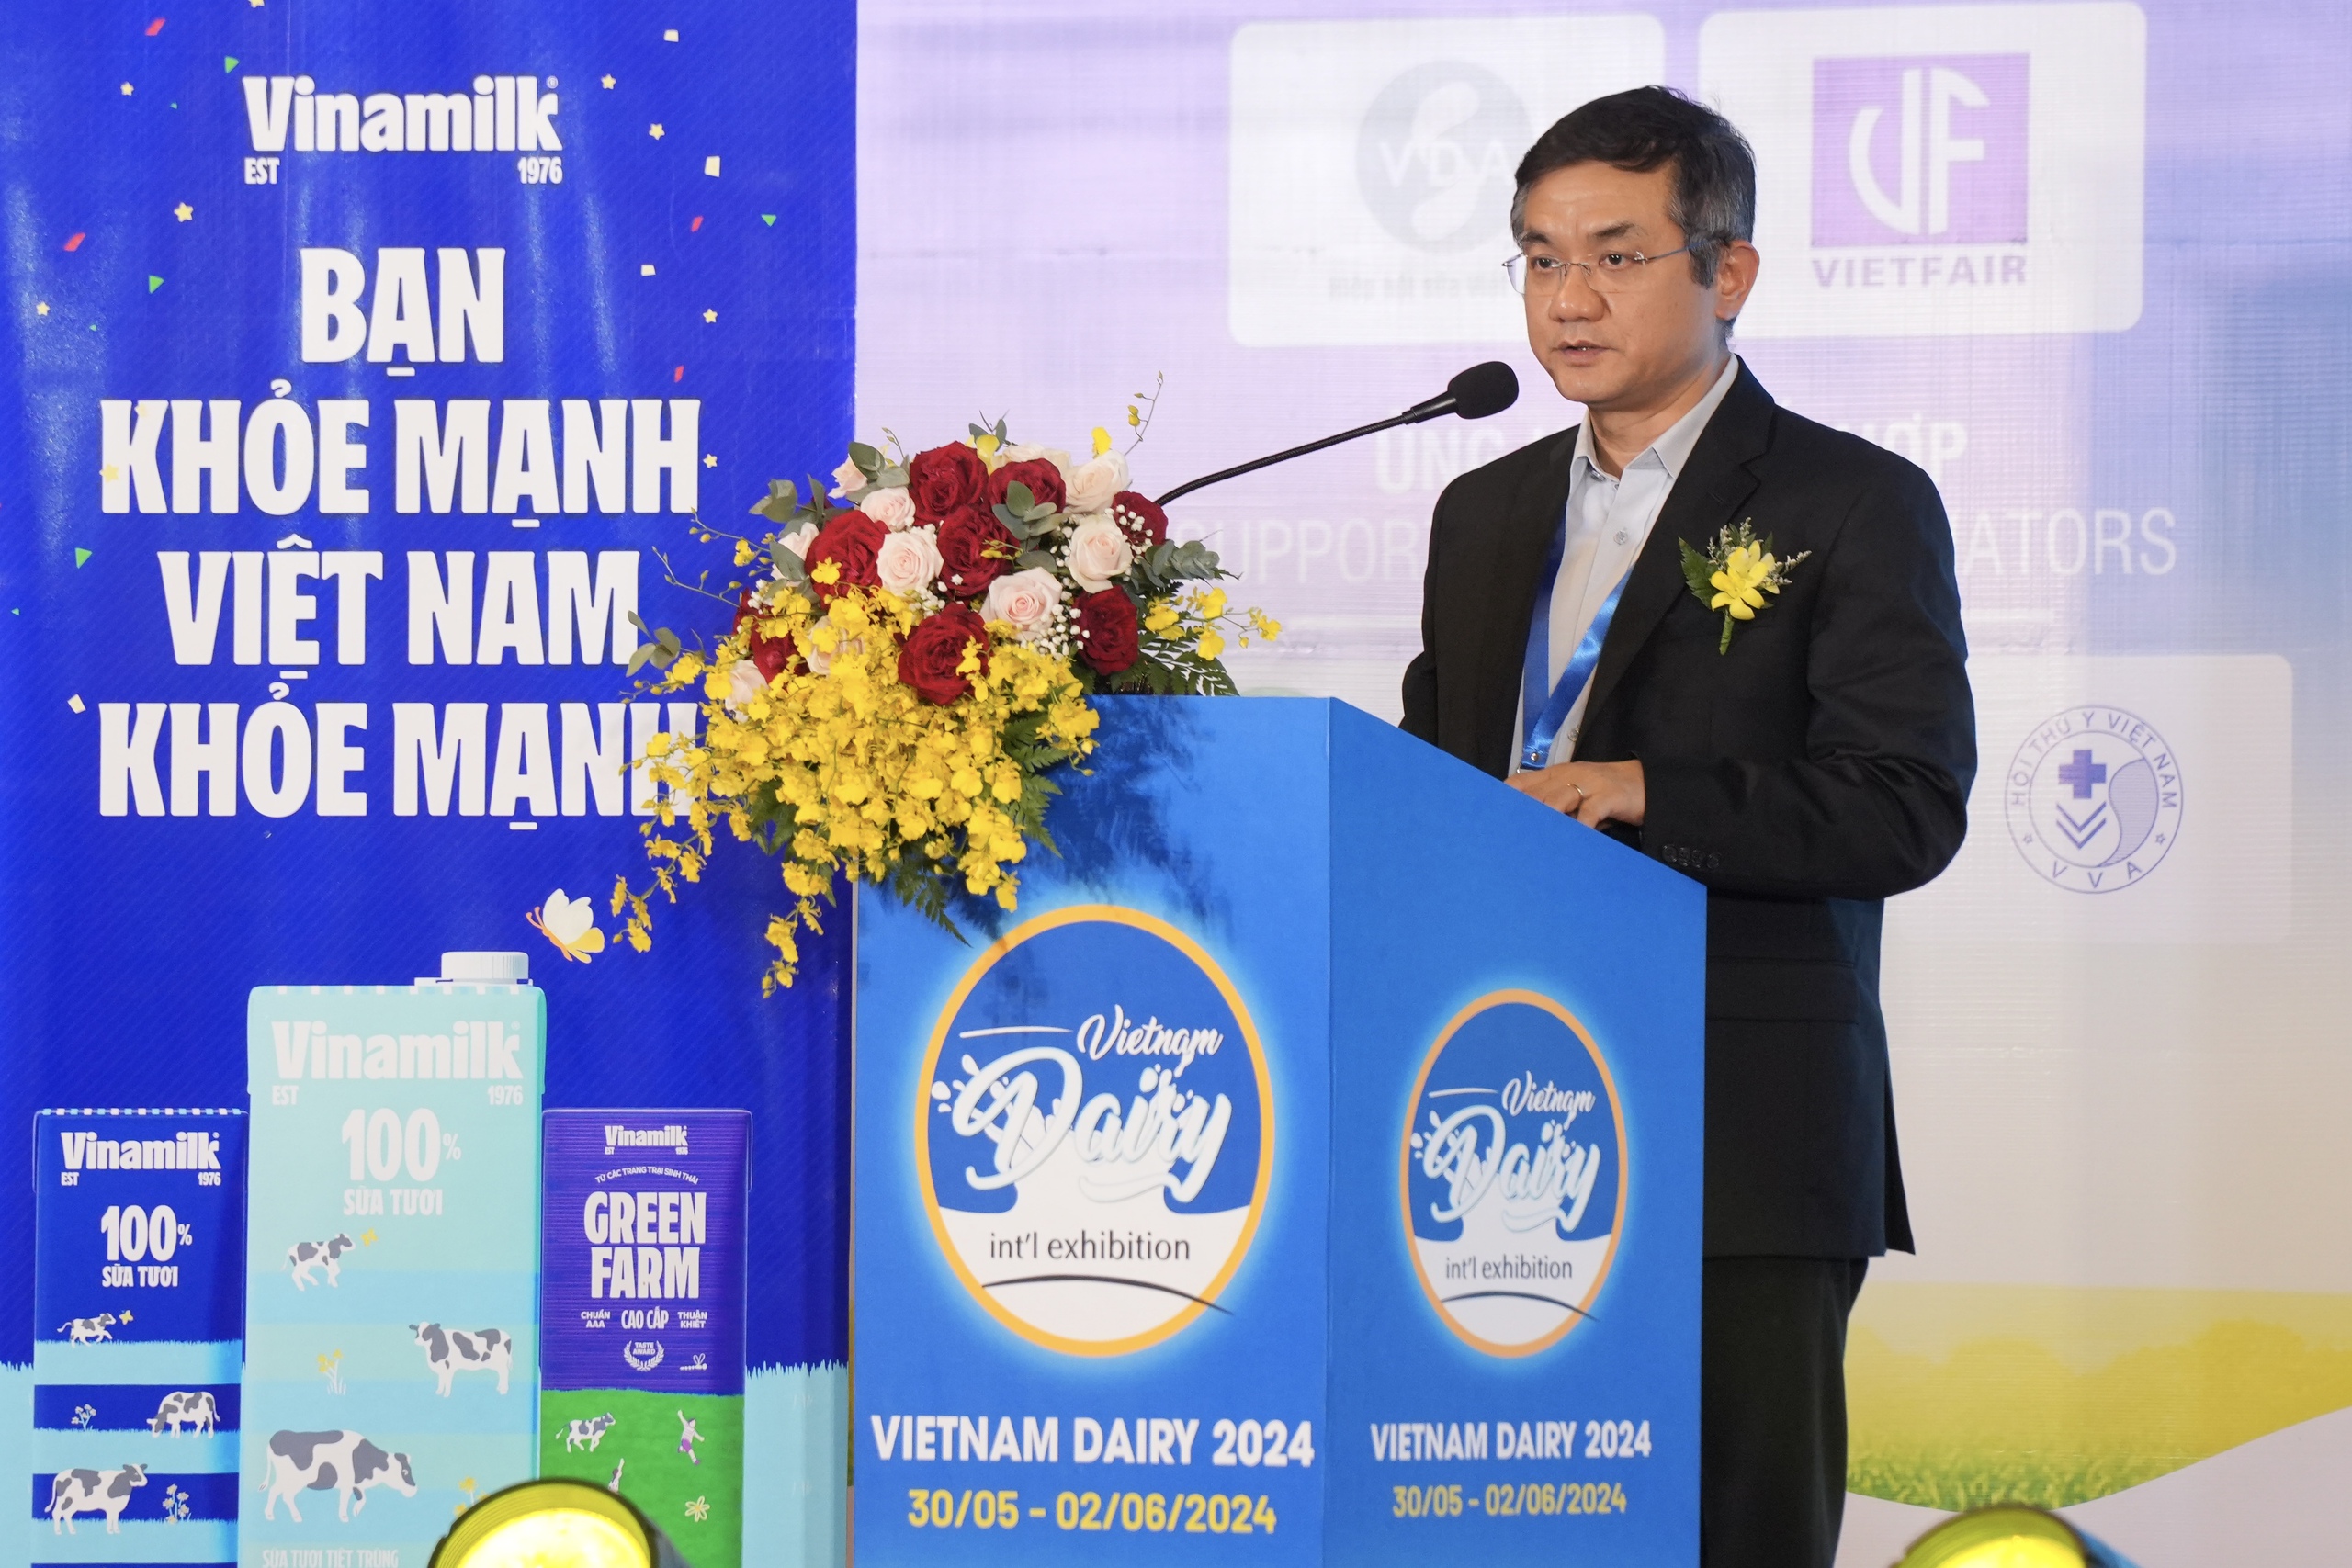 Sức hút nổi bật của Vinamilk tại triển lãm quốc tế chuyên ngành sữa - Ảnh 1.